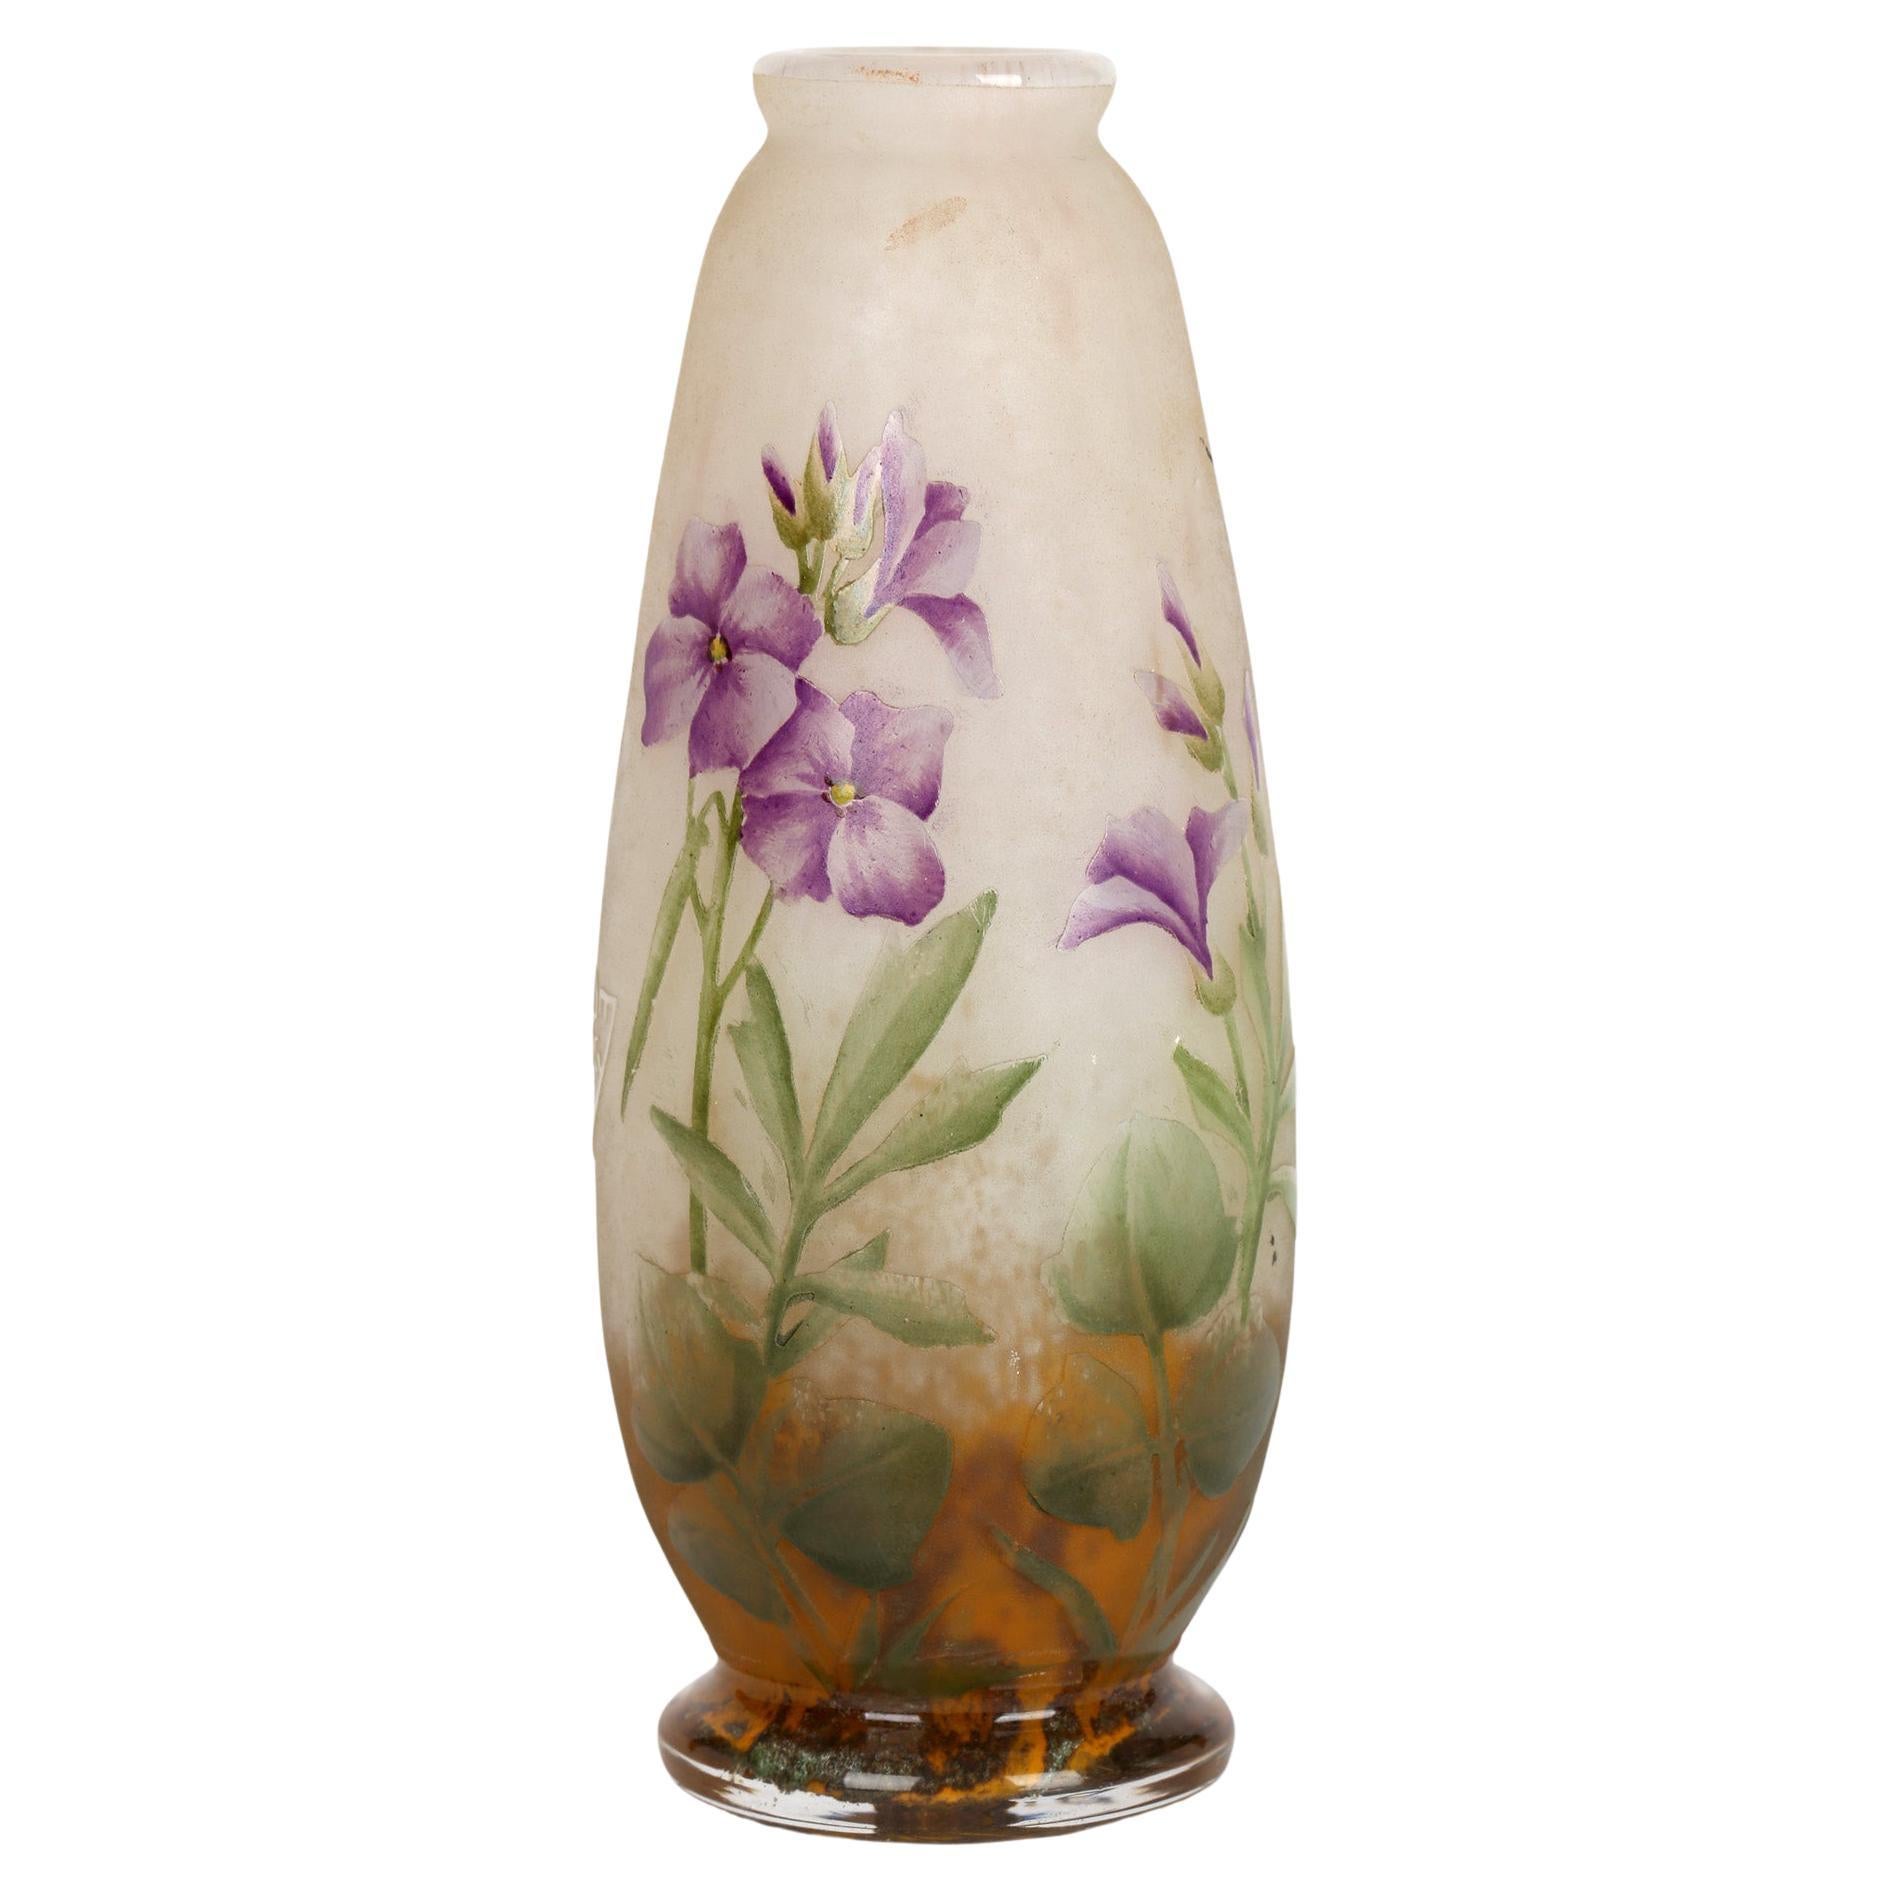 Daum Nancy French Art Nouveau Miniature Cameo Glass Vase with Violets